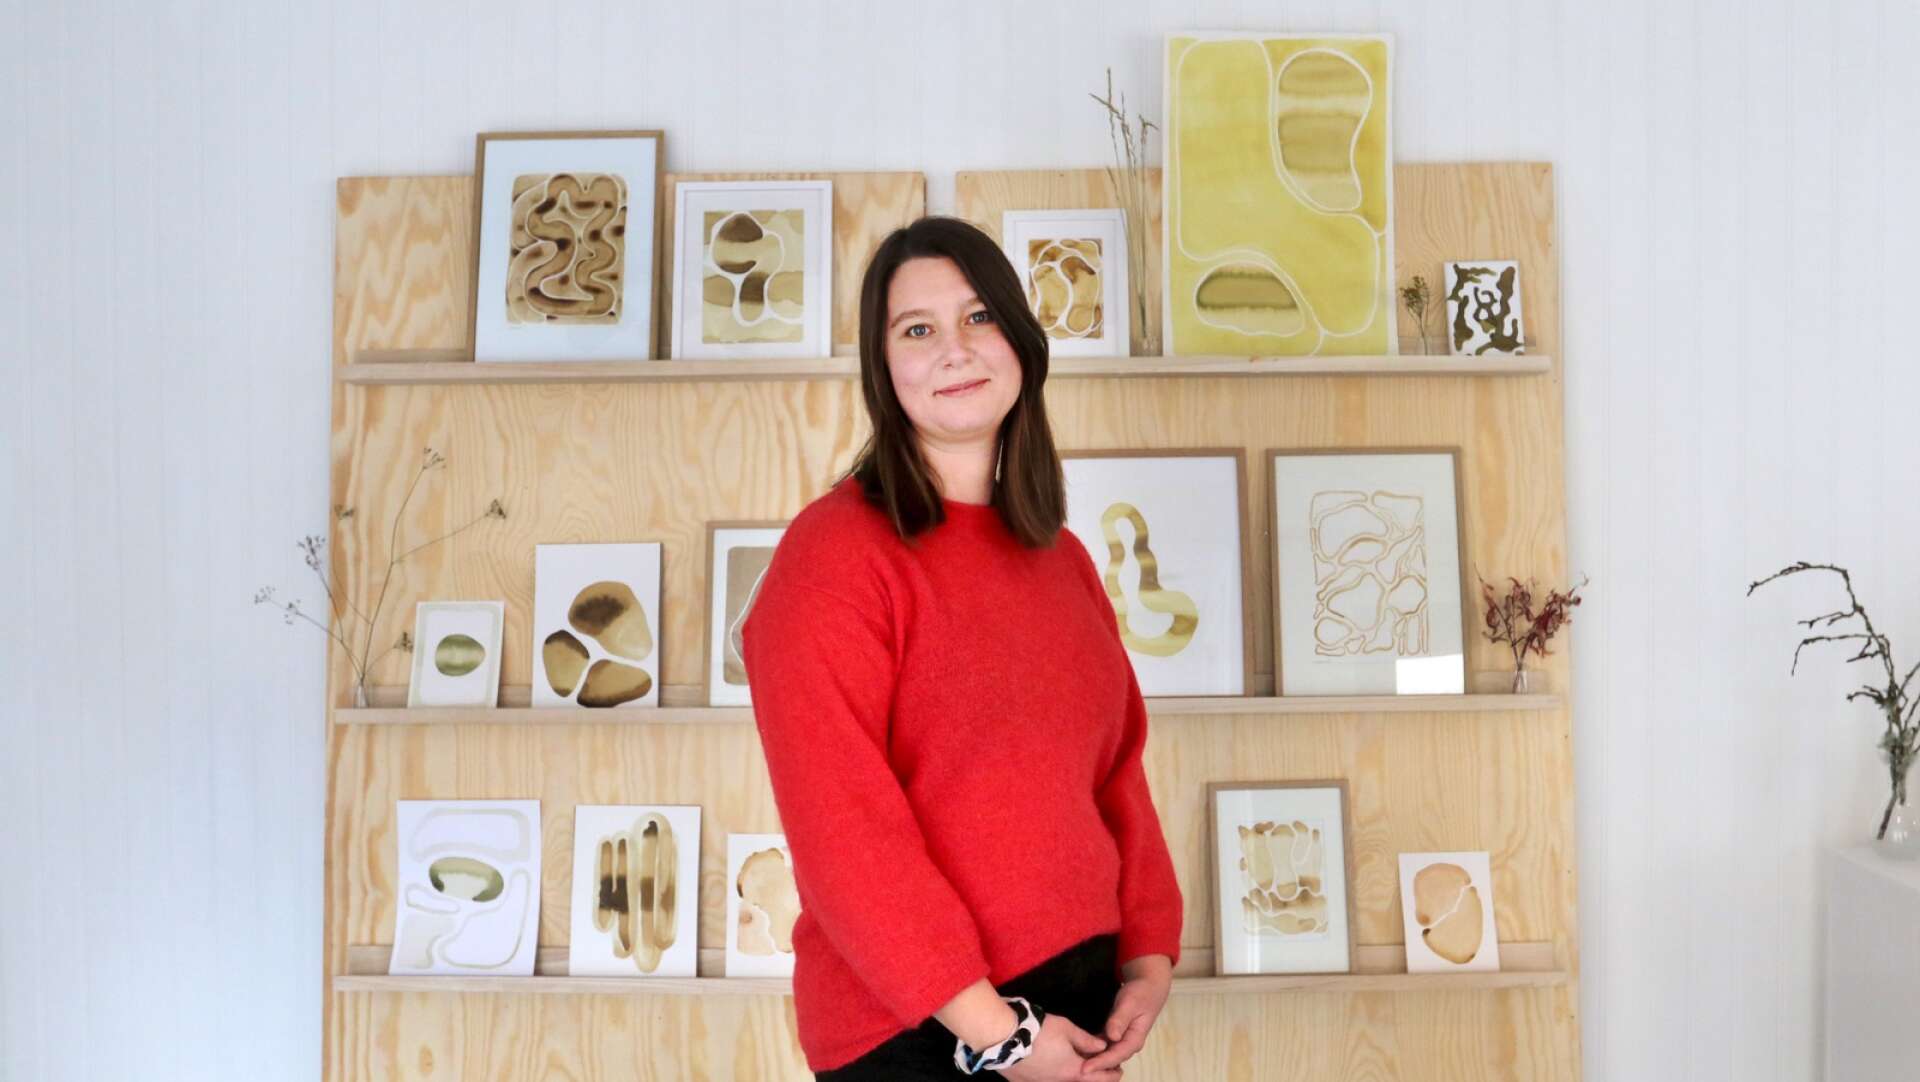 På lördag öppnas portarna till en ny ateljé, utställningslokal och butik, det är Cecilie Ellen Thulin, som skapar under namnet Ellen Öhman, som hälsar välkommen.